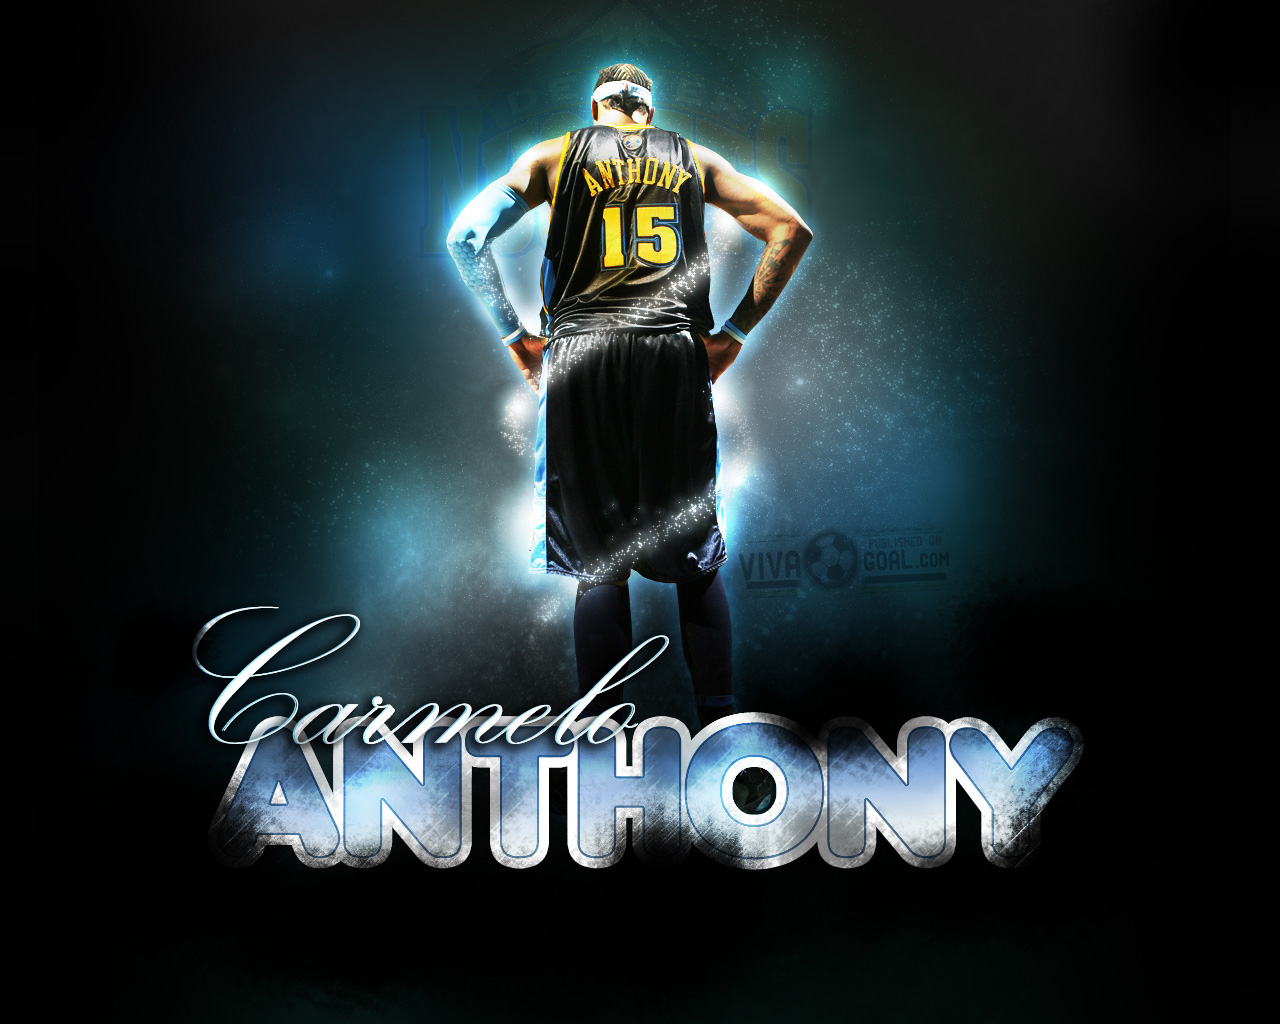 carmelo anthony alternate jersey  Carmelo anthony, Anthony, Carmelo anthony  wallpaper